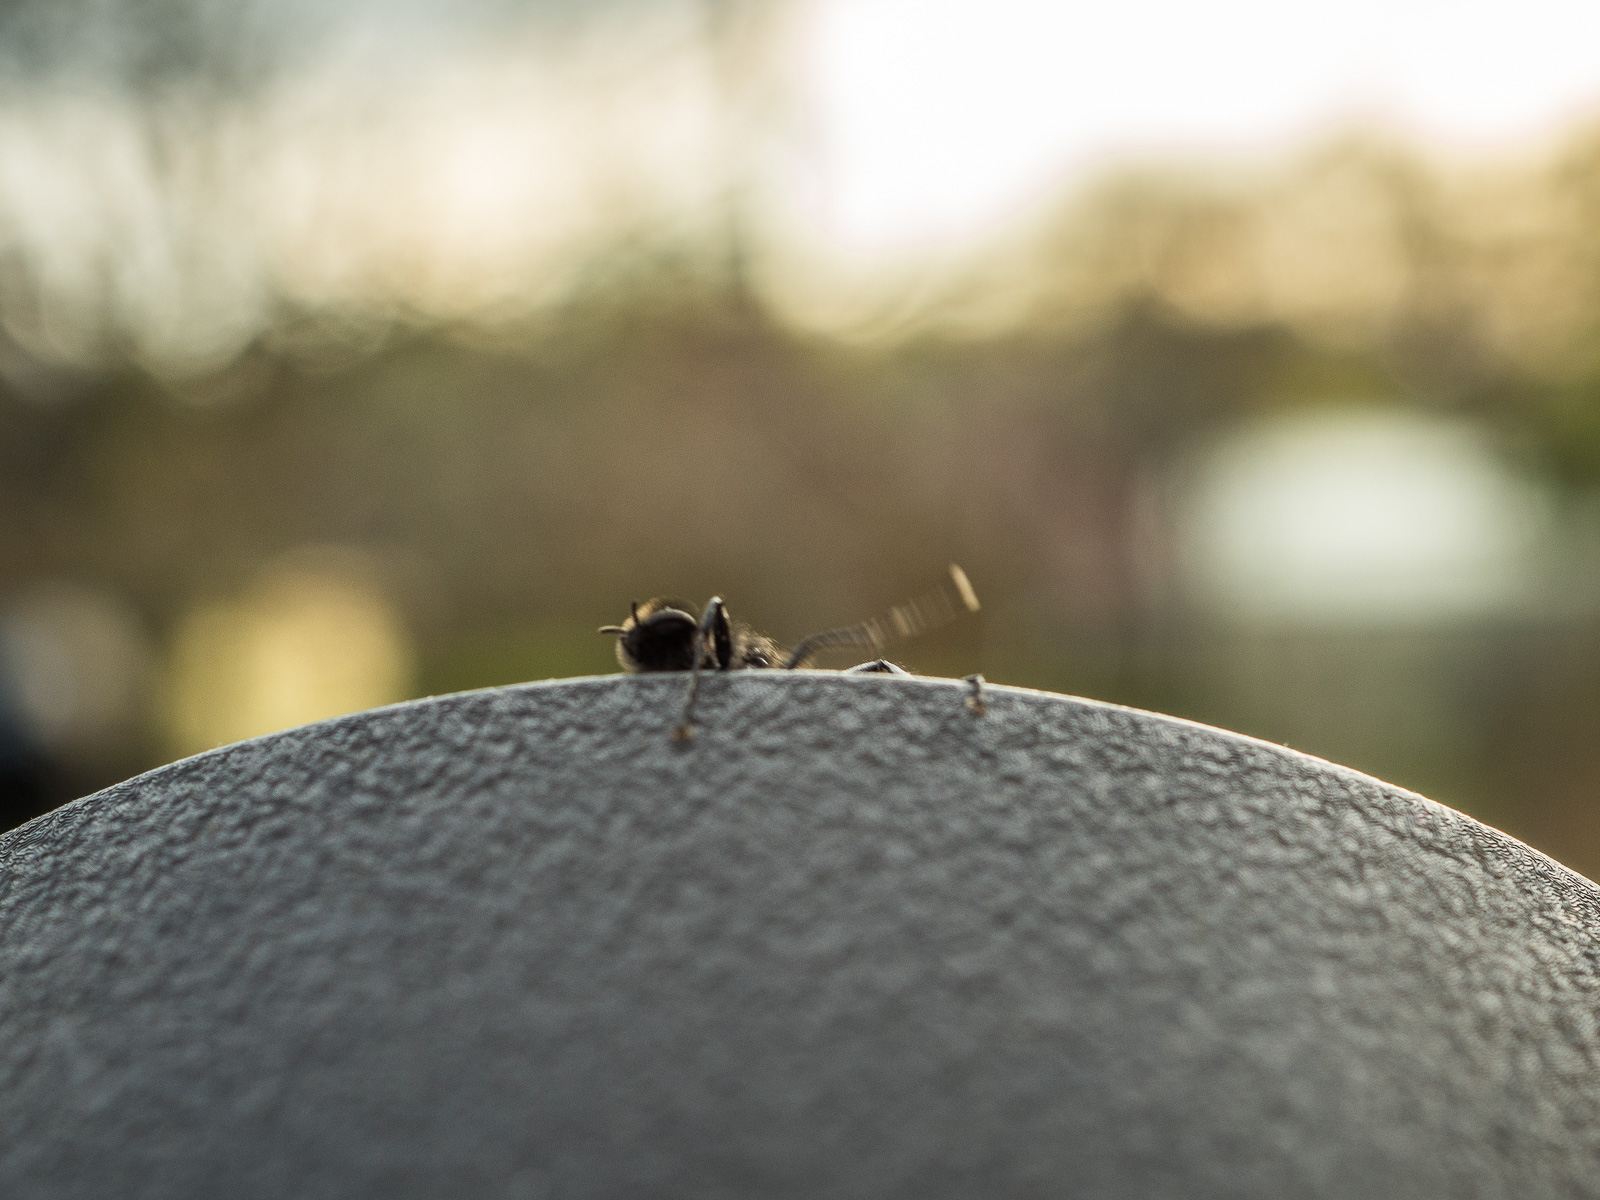 Eine schwarze Fliege oder ähnliches Insekt krabbelt vor dem Hintergrund untergehender Sonne von unten auf einen schwarzen Untergrund. Hier bewegen sich die linken Beine nach oben